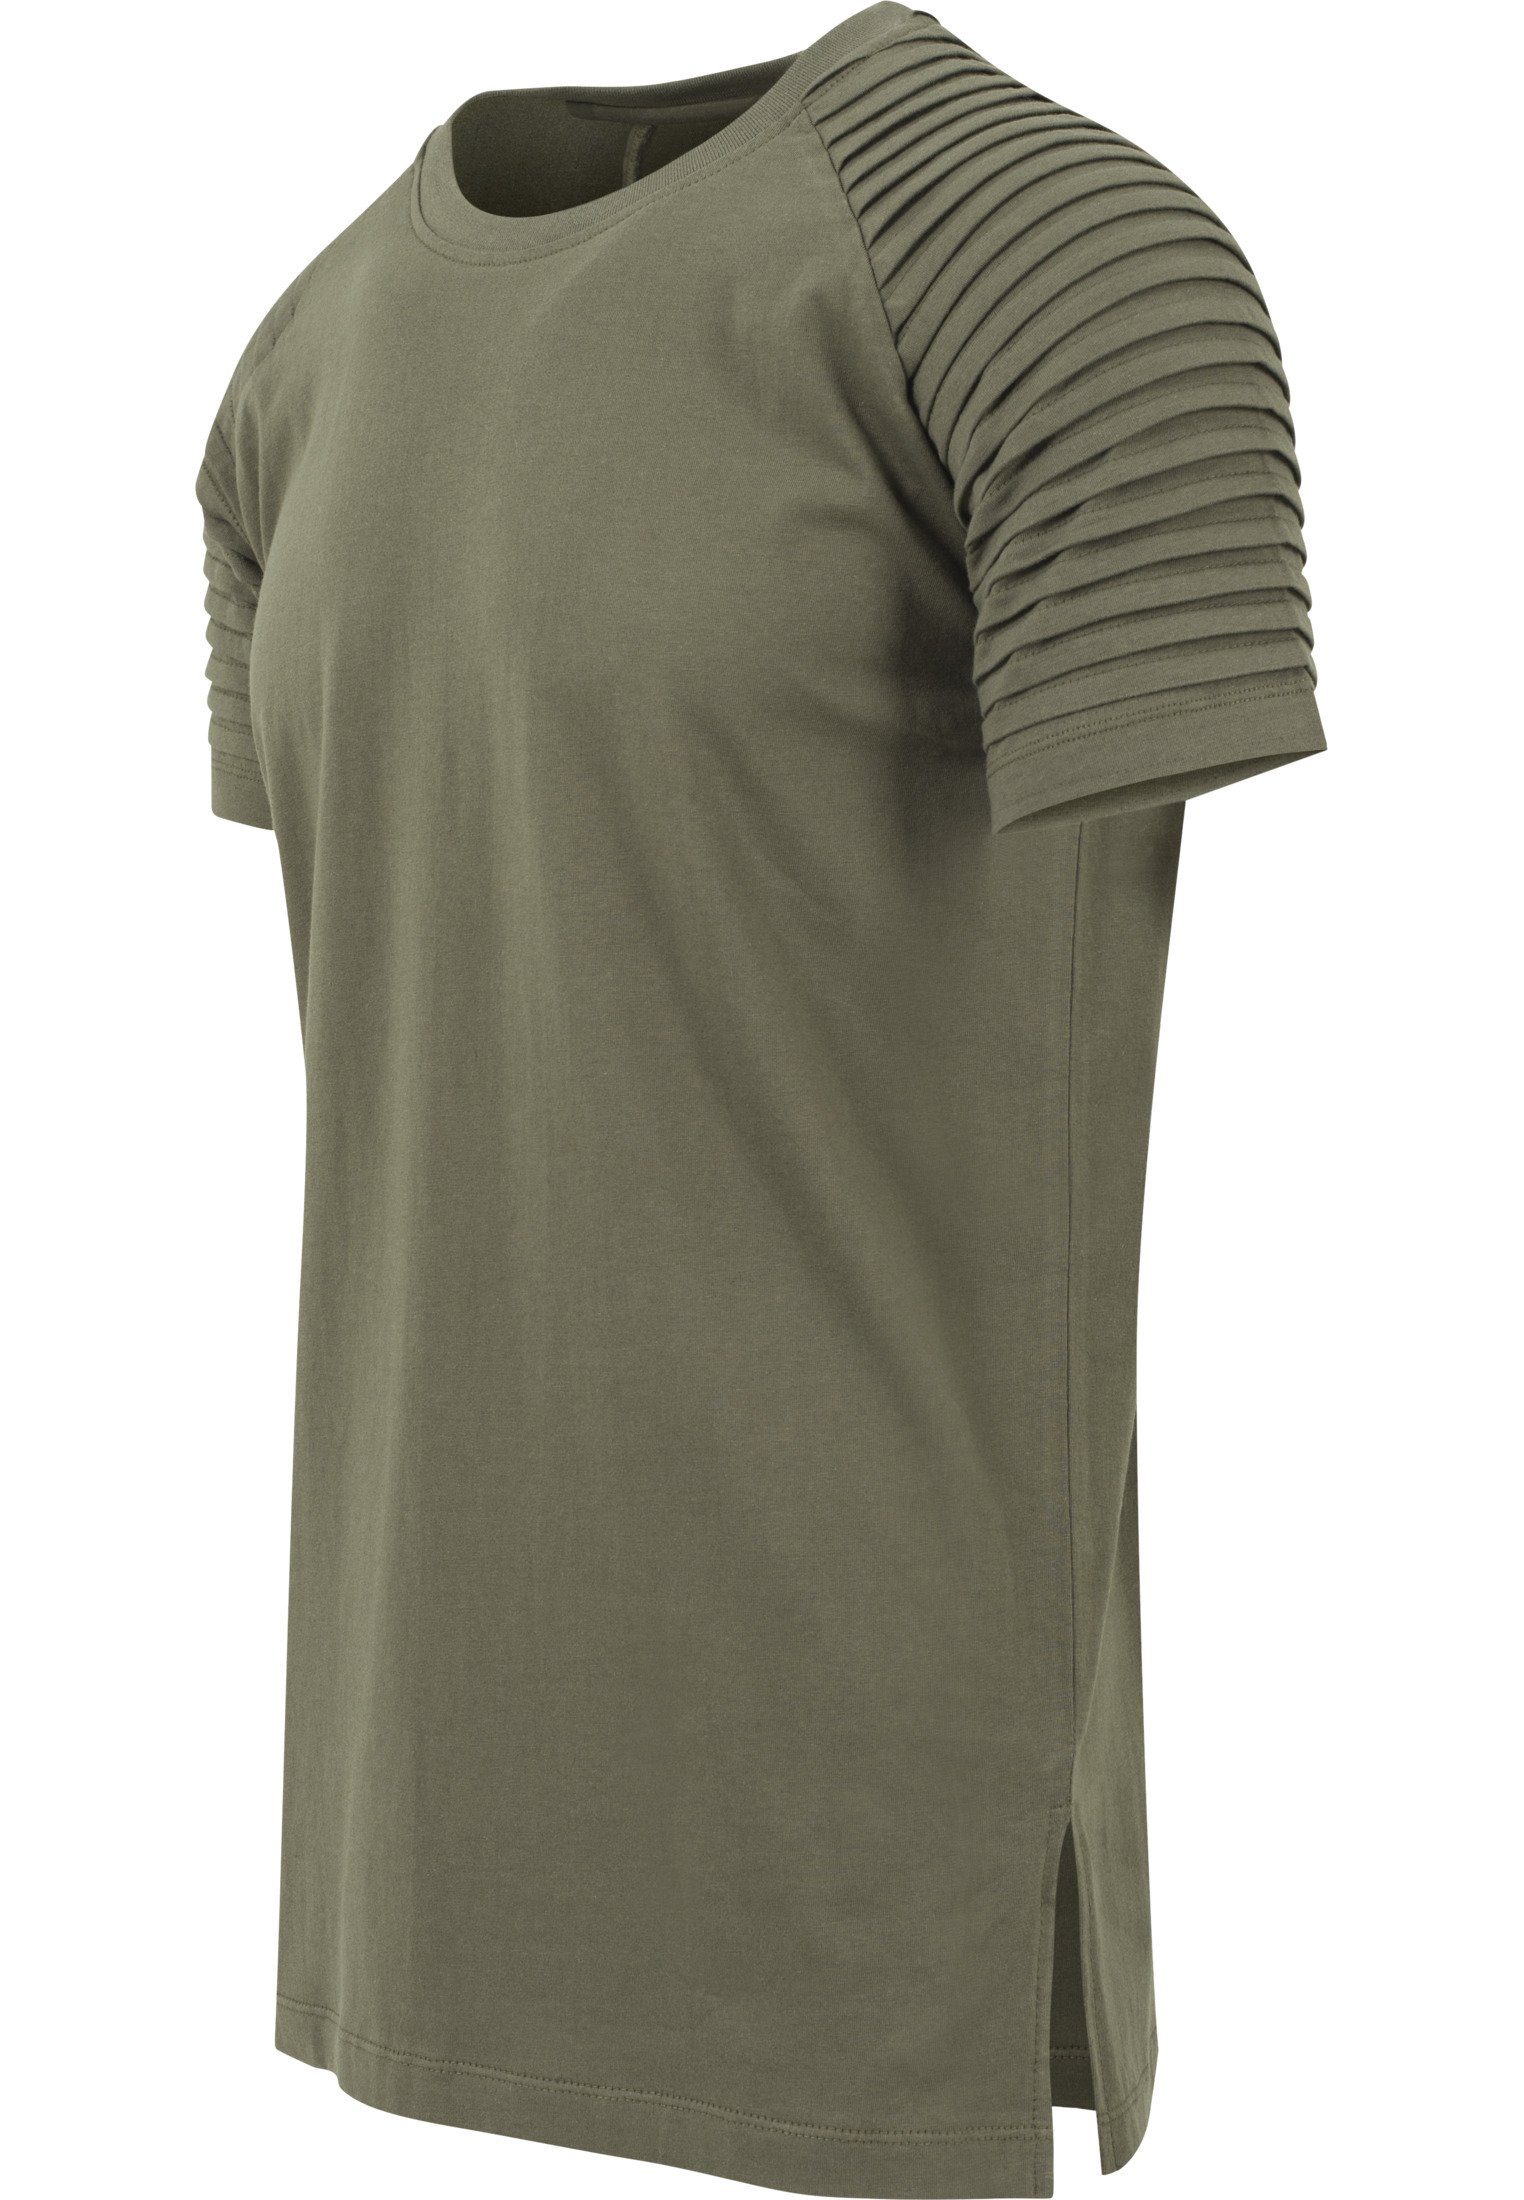 (1-tlg) T-Shirt Raglan olive URBAN T-Shirt Pleat CLASSICS Tee